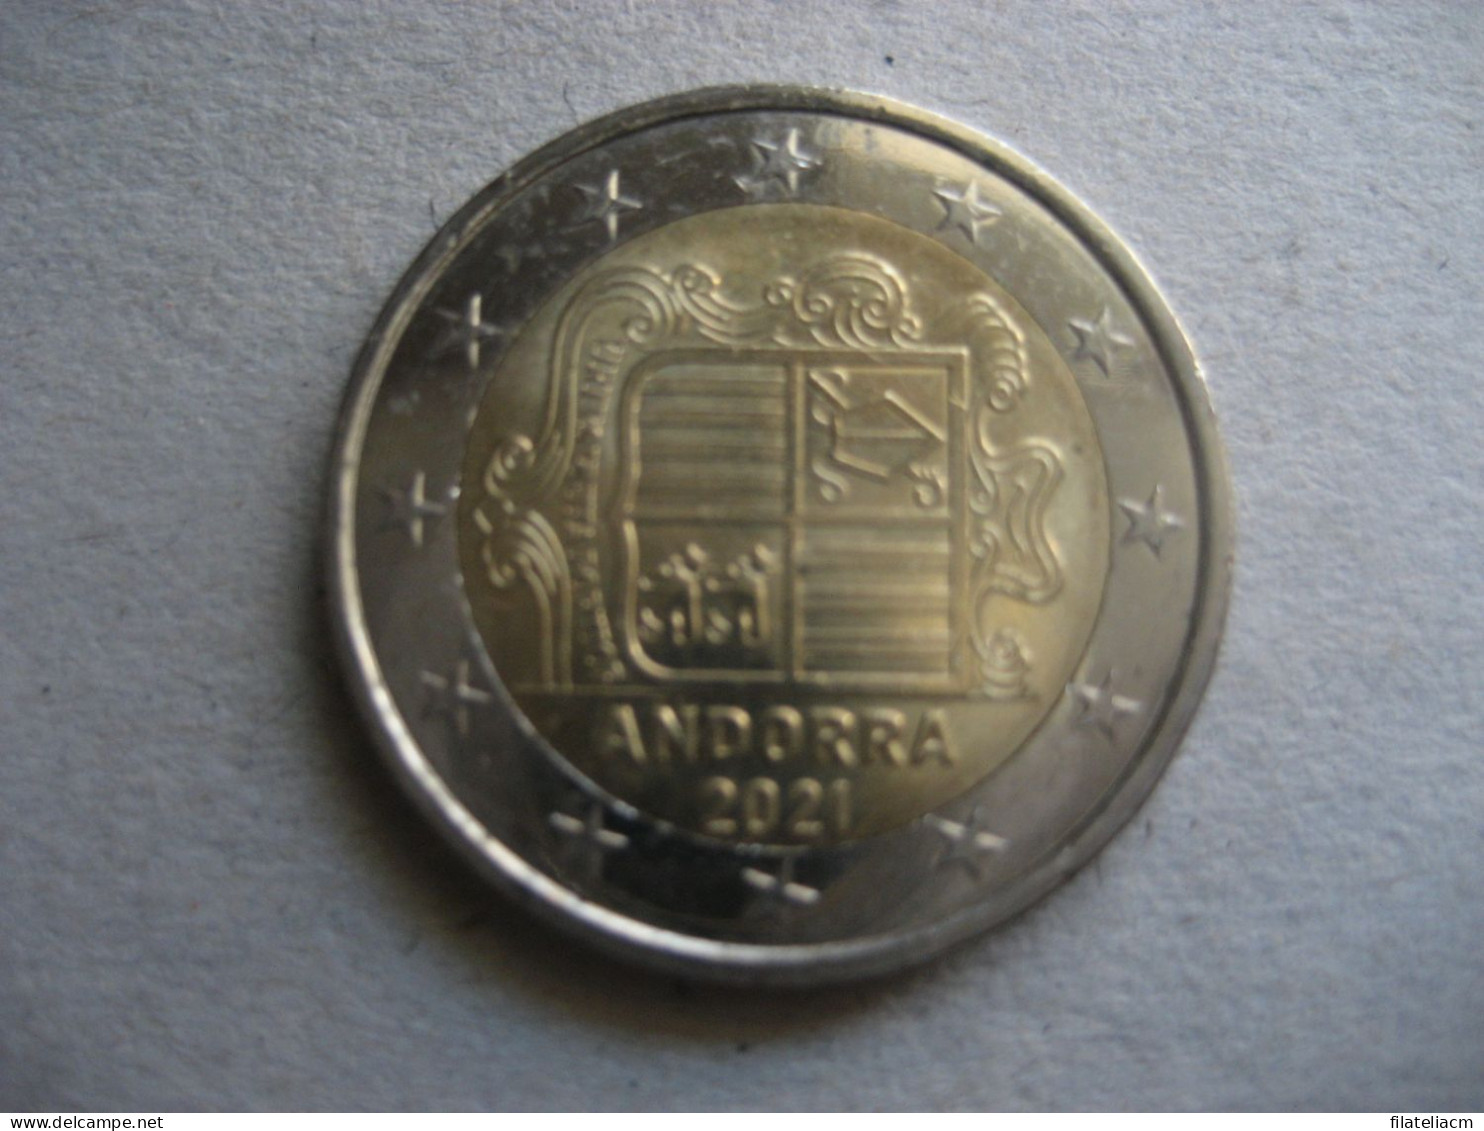 2 EURO 2021 Normal Condition Eur Euros Coin ANDORRA Andorre Spain France Area Coat Of Arms - Andorra